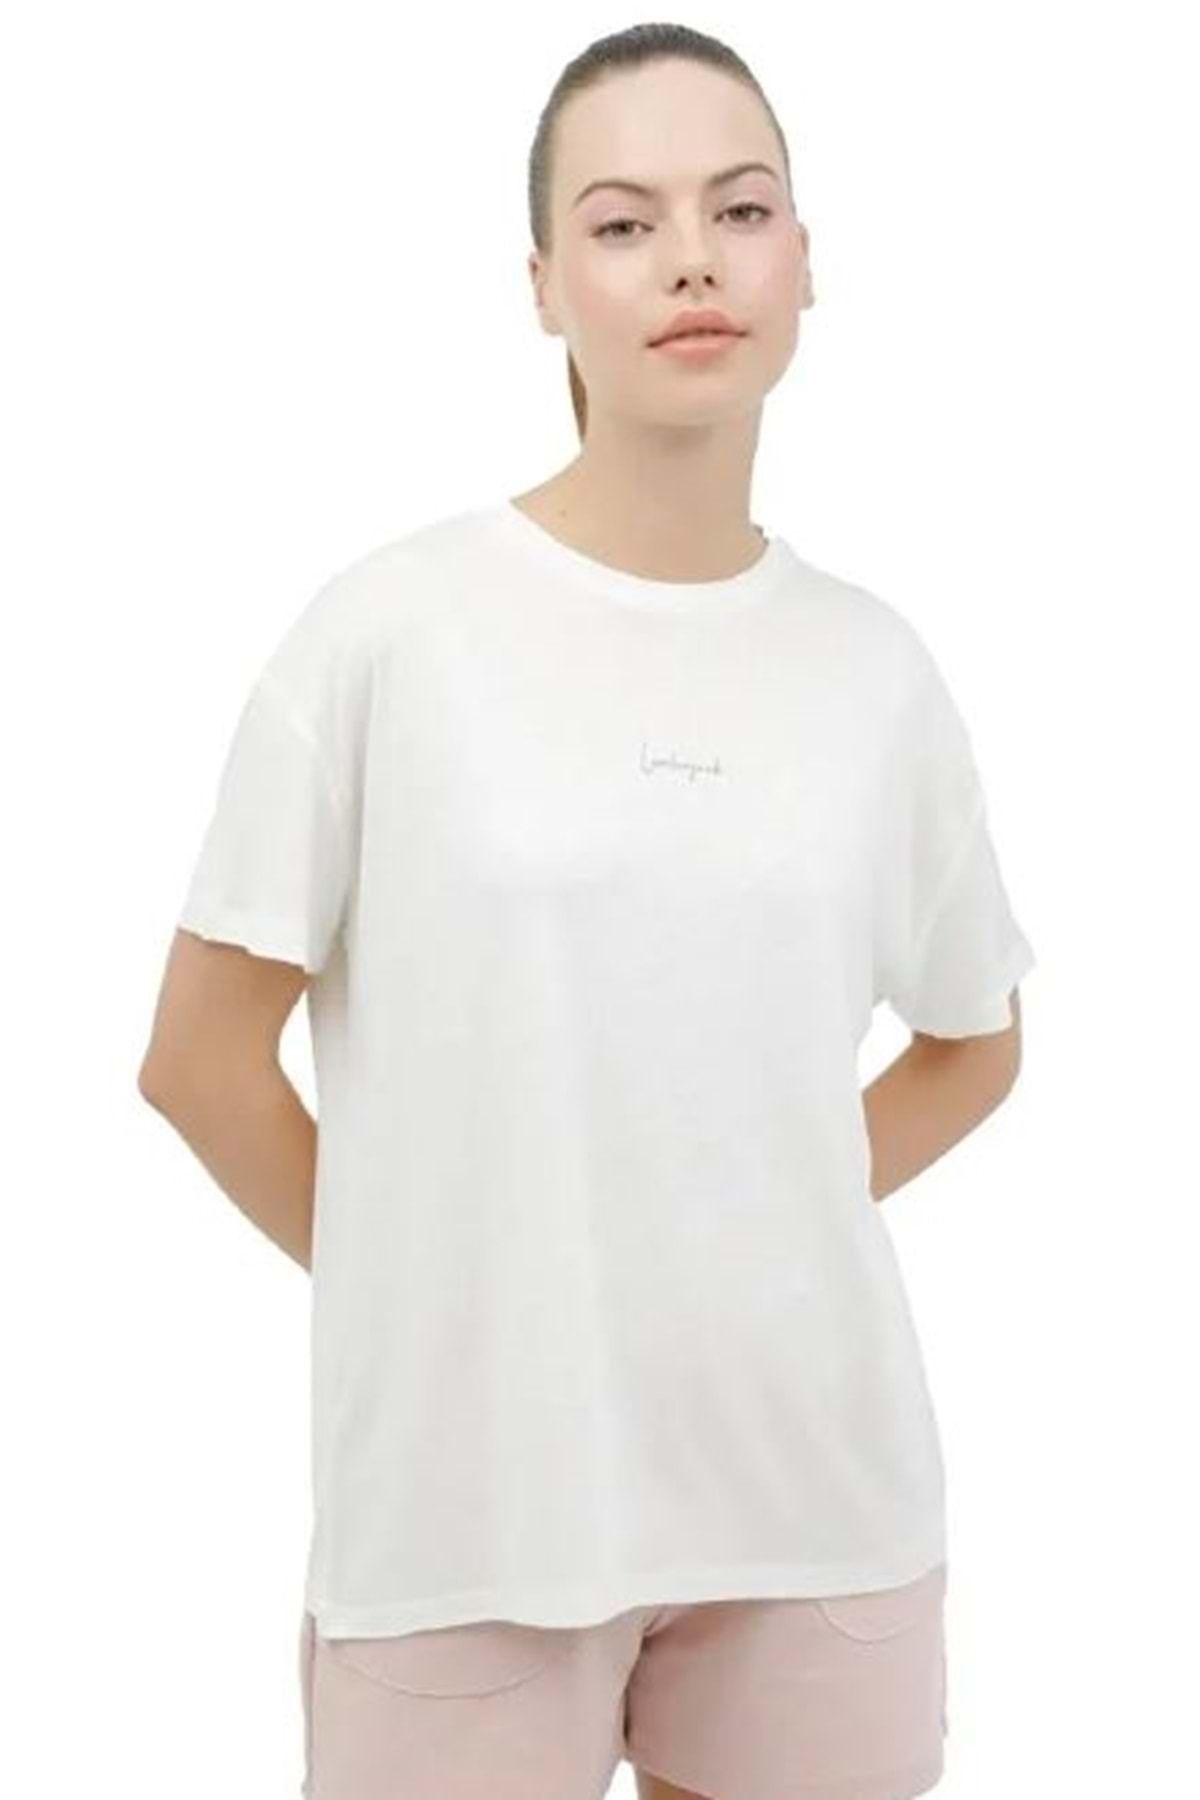 Lumberjack Wl Calı 11lam102 Ekru Kadın Kısa Kol T-shirt Kadın Tişört Beyaz